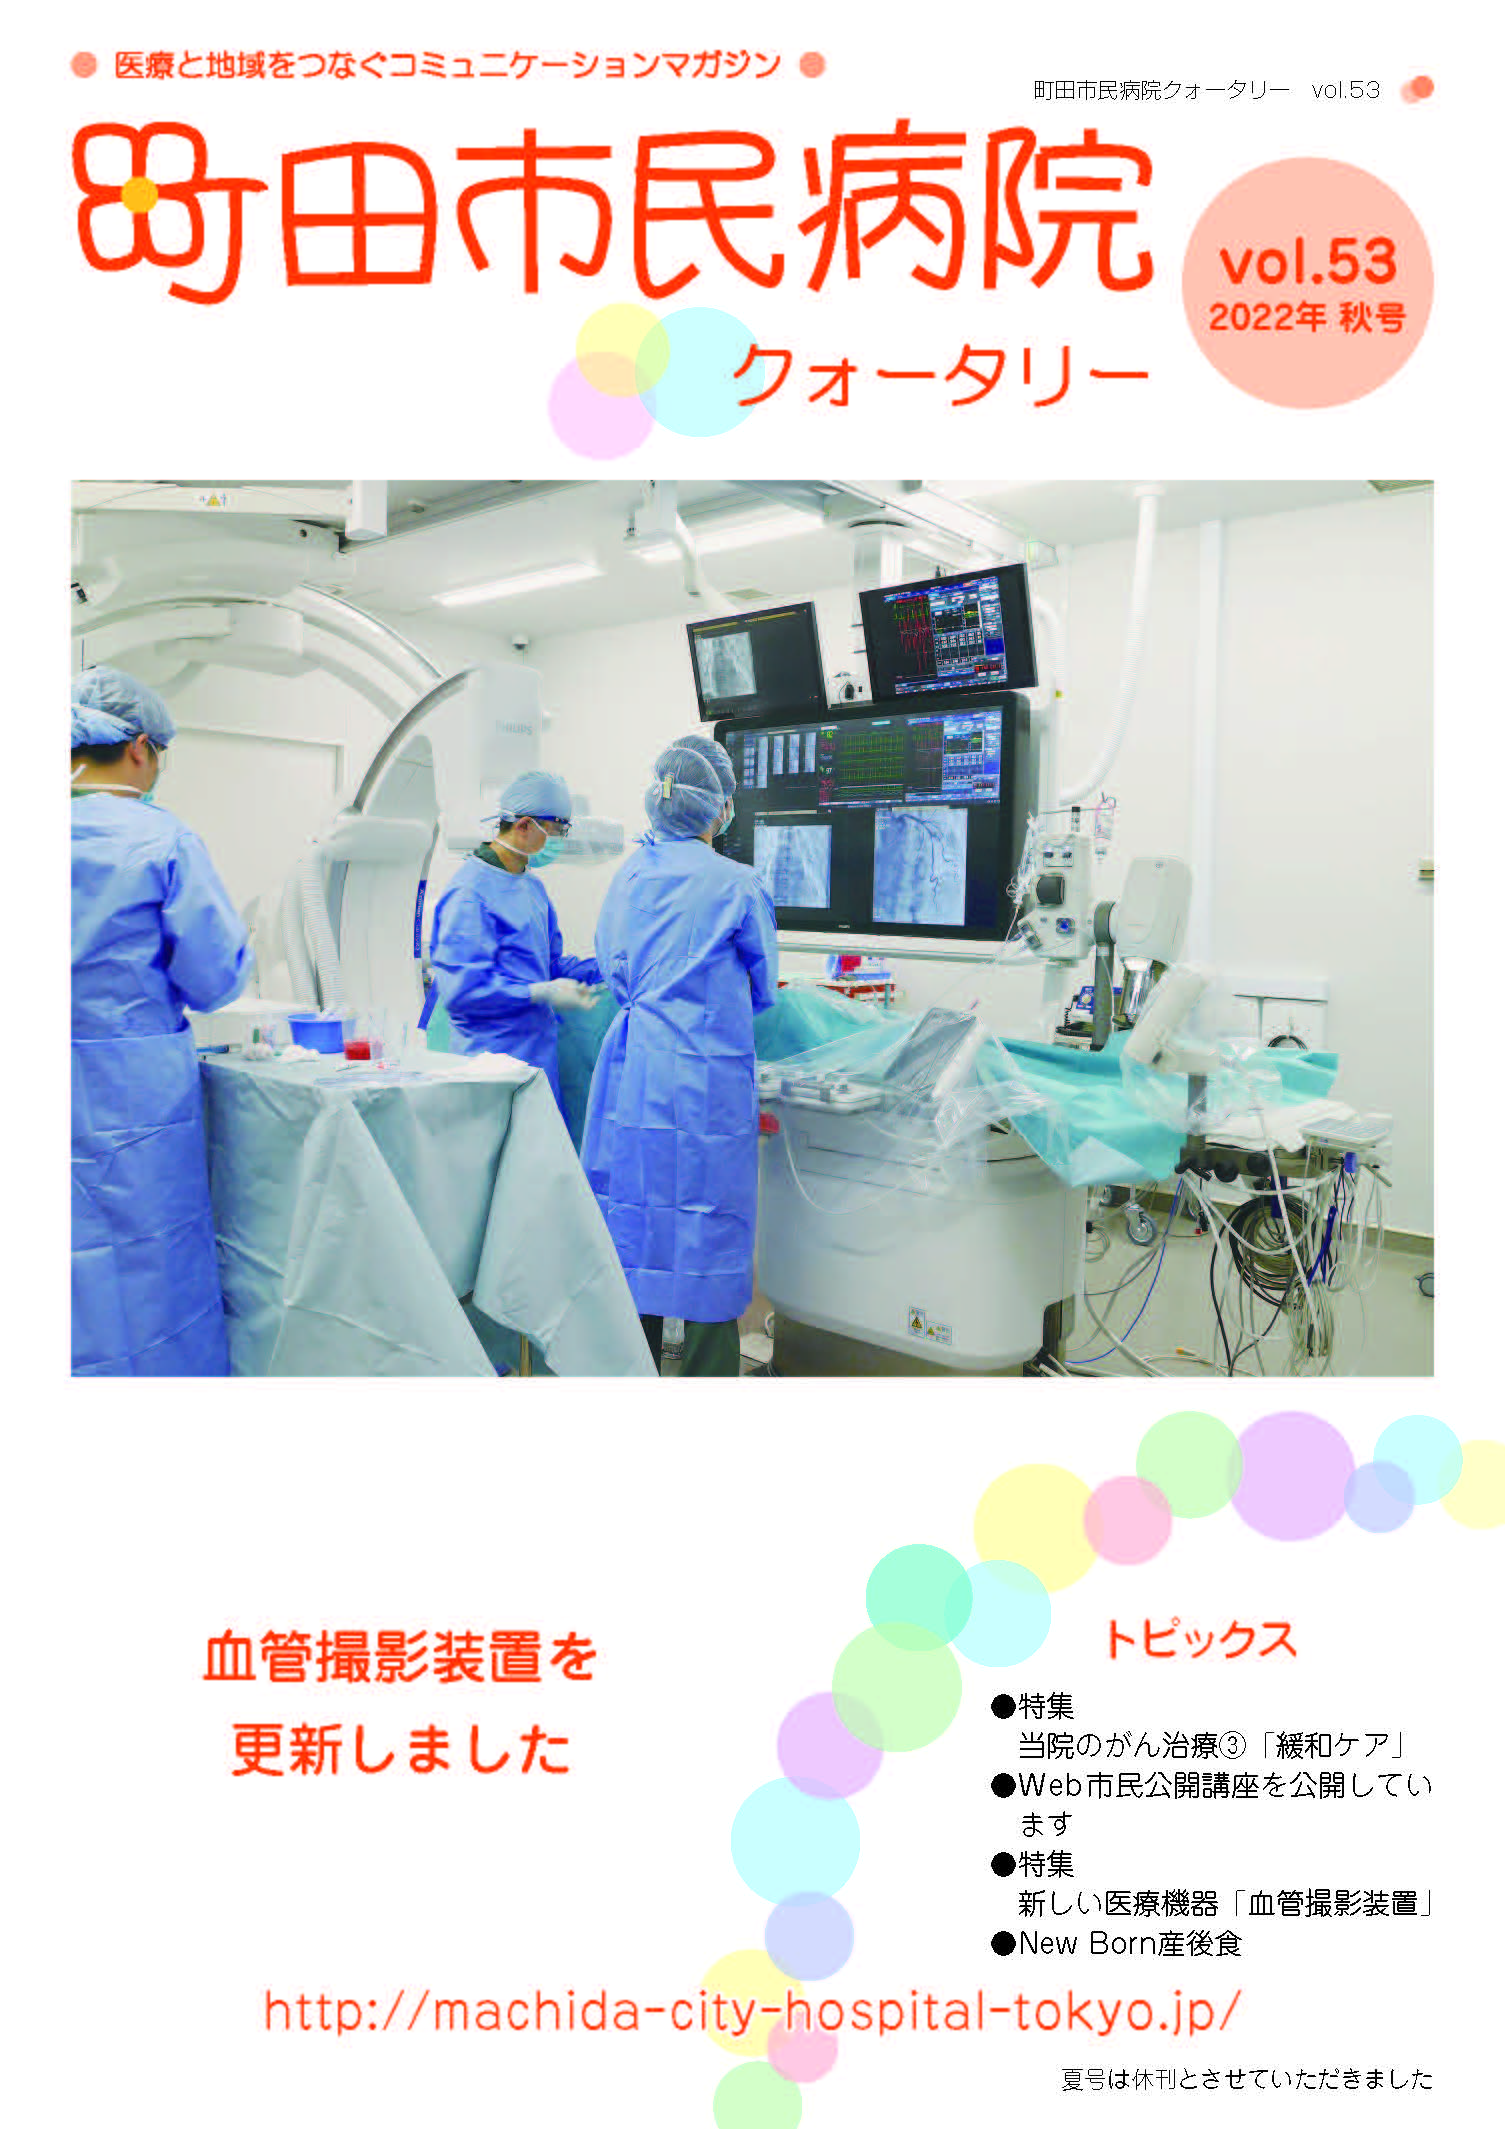 季刊「まちだ市民病院」第53号（2022年秋号）